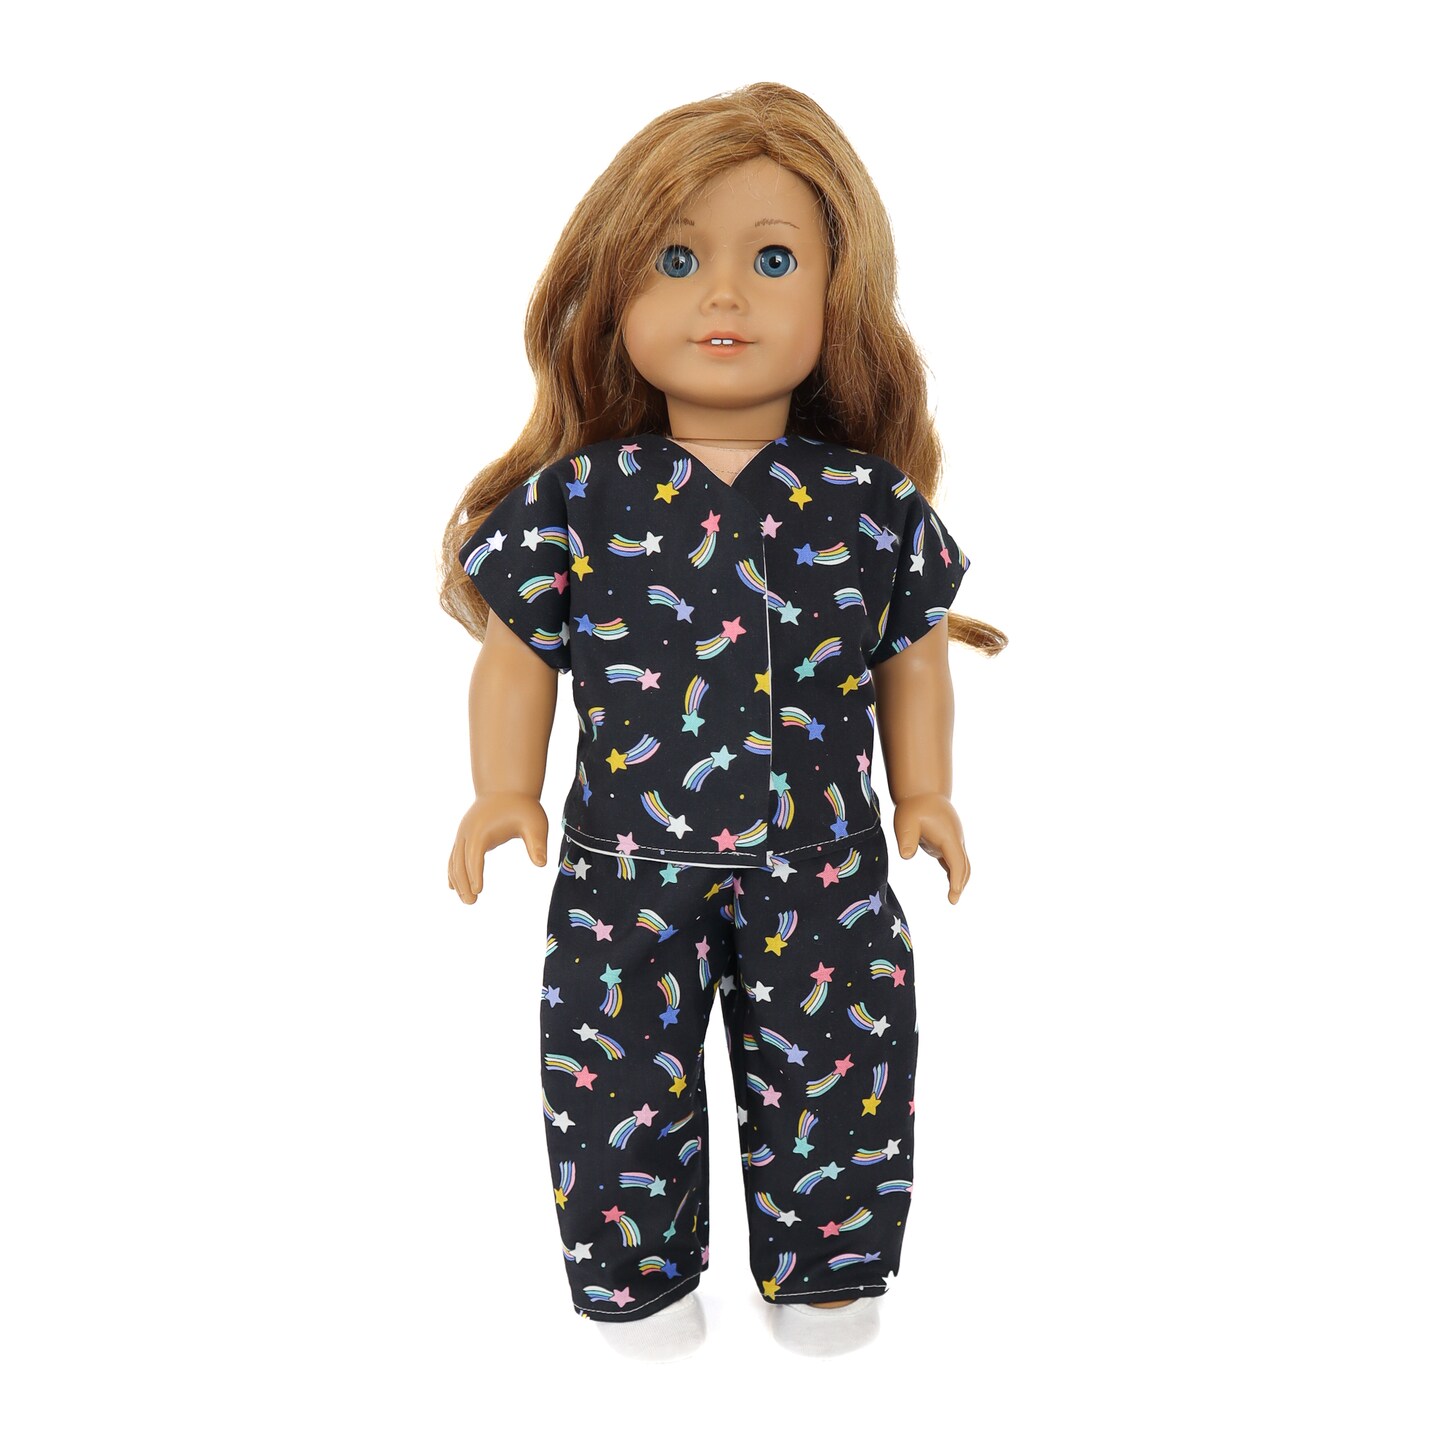 Kids Sewing Kit Bundle - Doll Pajamas, Drawstring Backpack